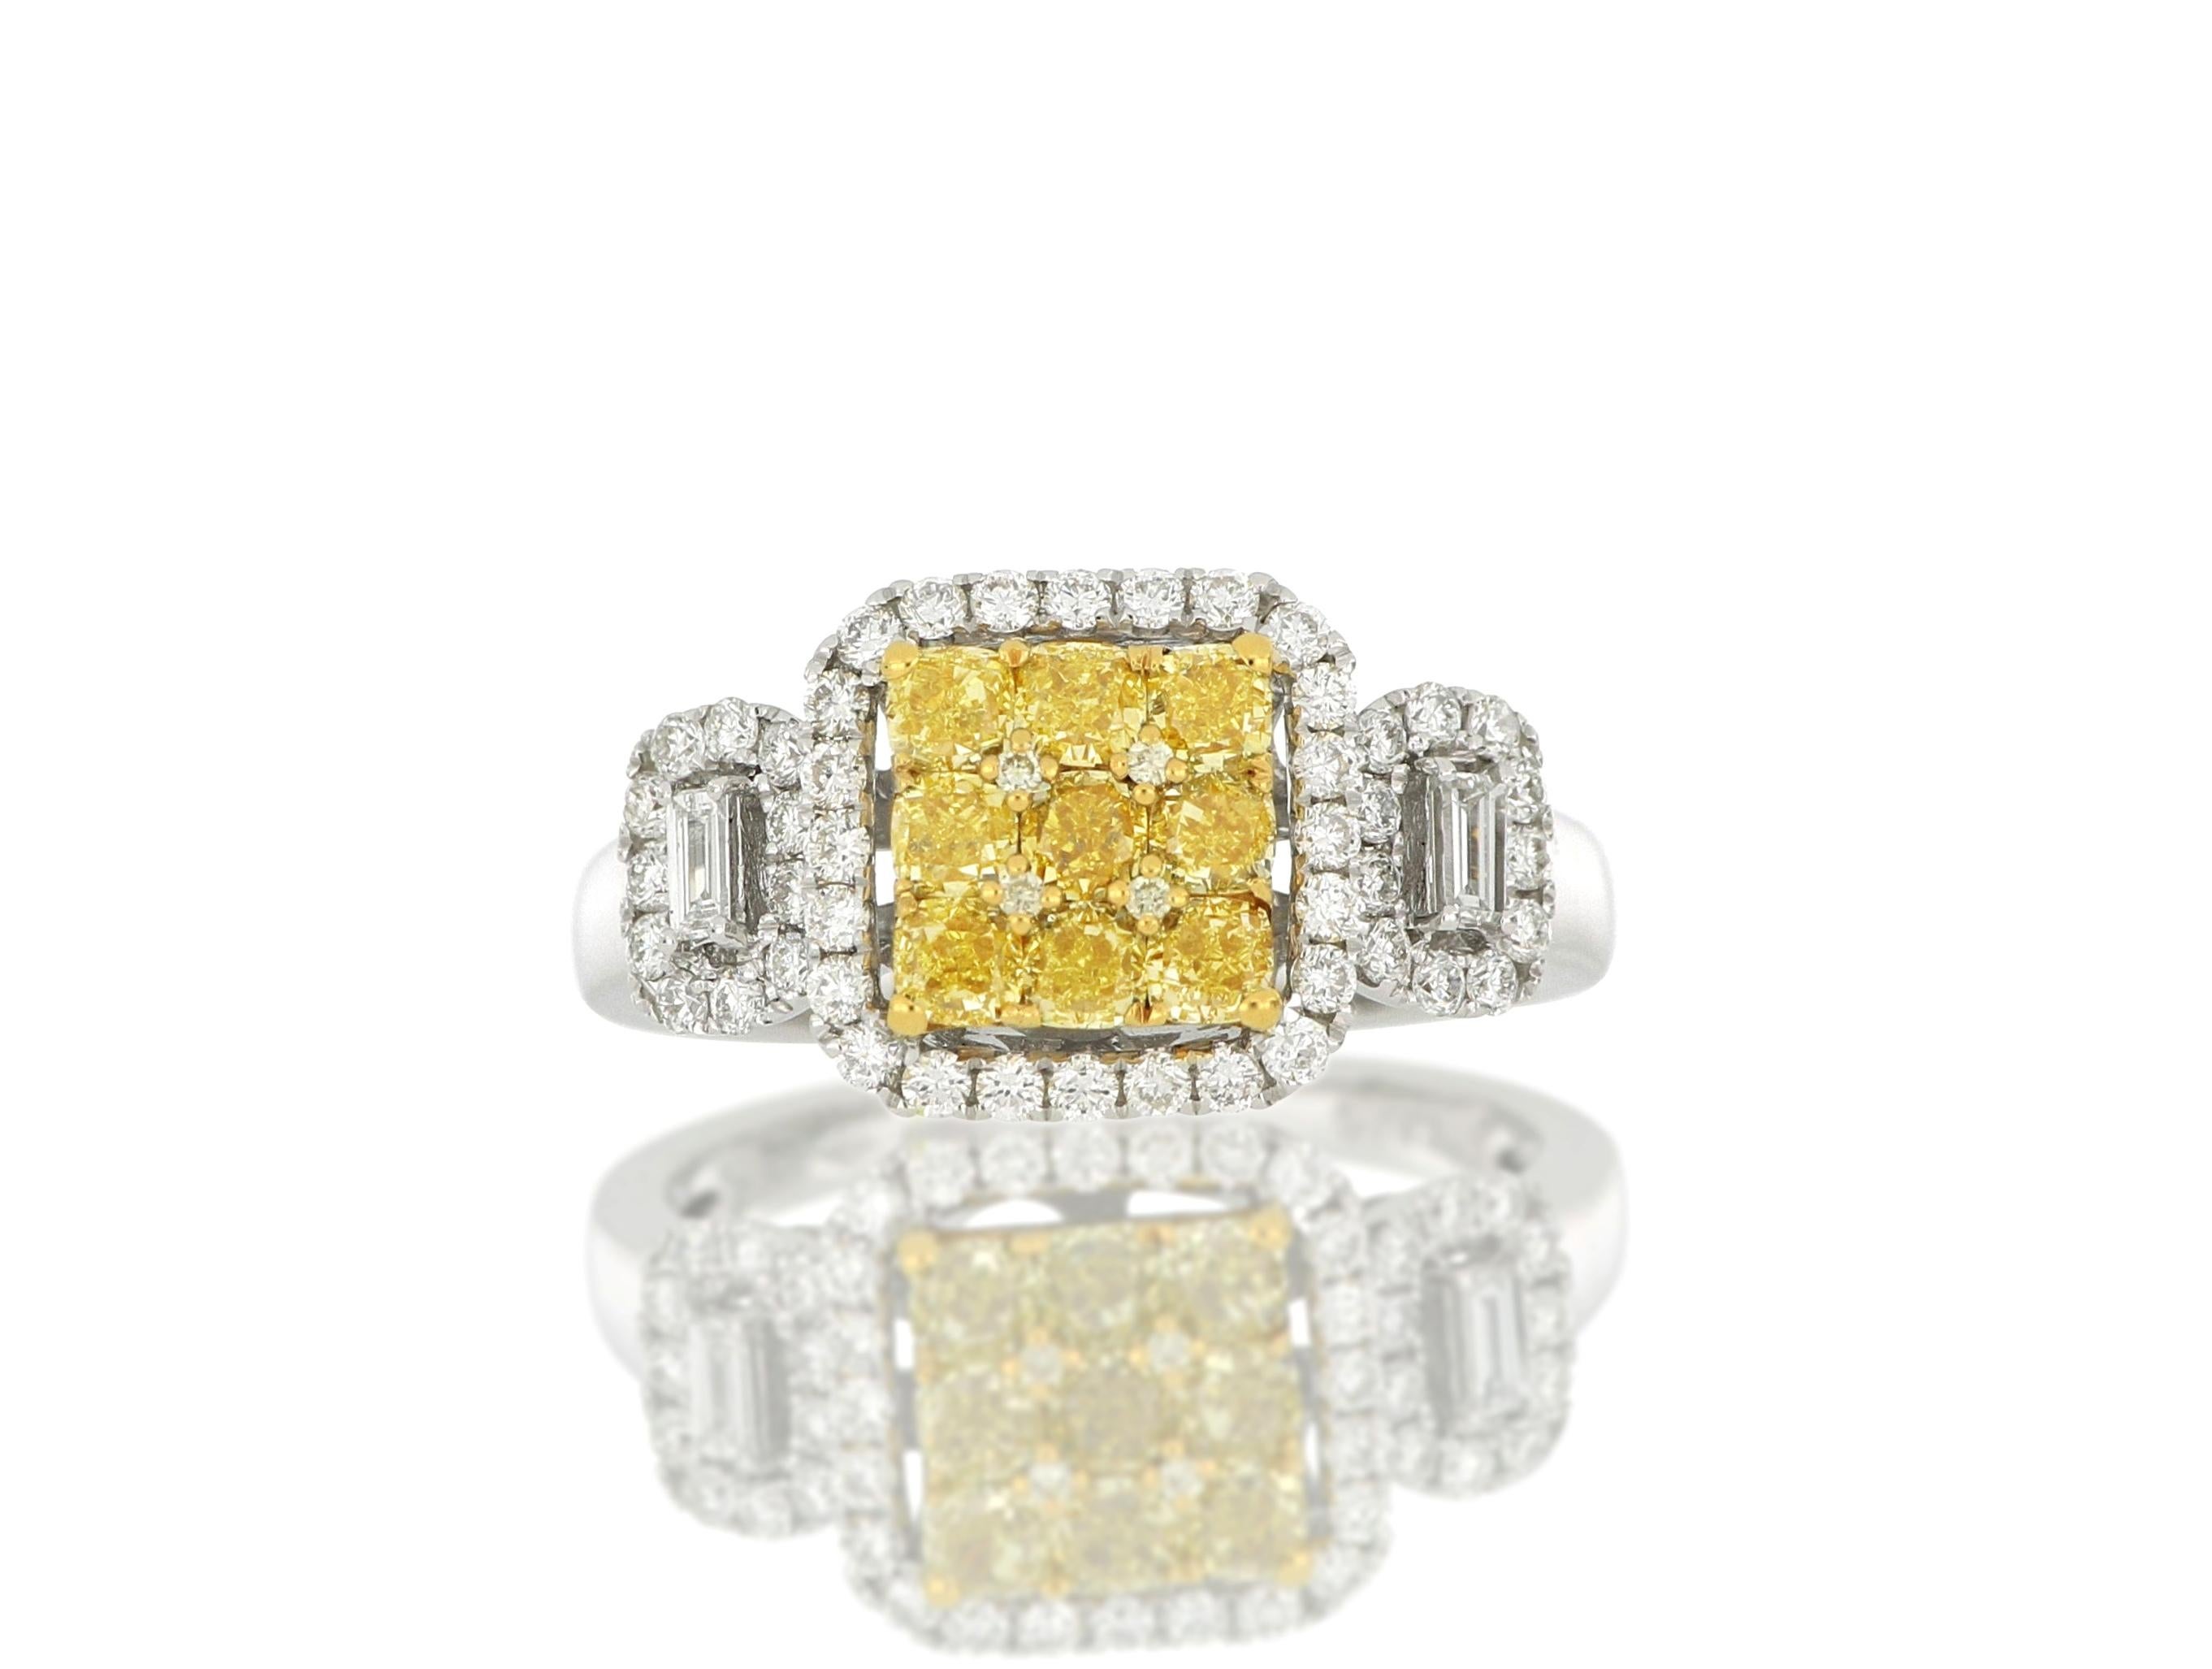 Ein Diamantring, besetzt mit natürlichen fancy gelben Diamanten im Brillantschliff mit einem Gewicht von ca. 1,01 Karat, flankiert von Diamanten im Brillantschliff und akzentuiert durch trapezförmige Diamanten mit einem Gesamtgewicht von ca. 0,56